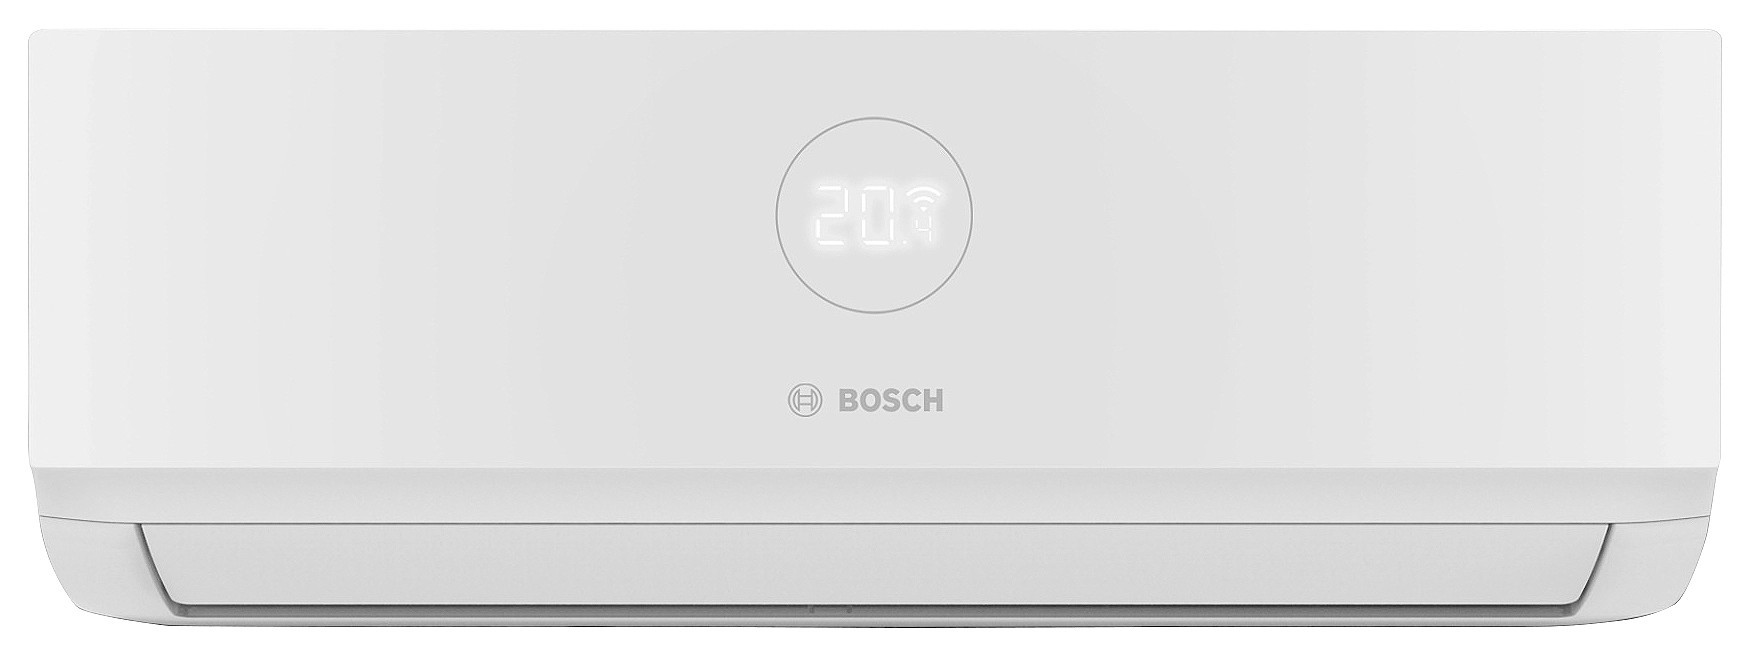 Цена внутренний блок мультисплит-системы Bosch CL3000i W 20E 2,0 кВт в Киеве